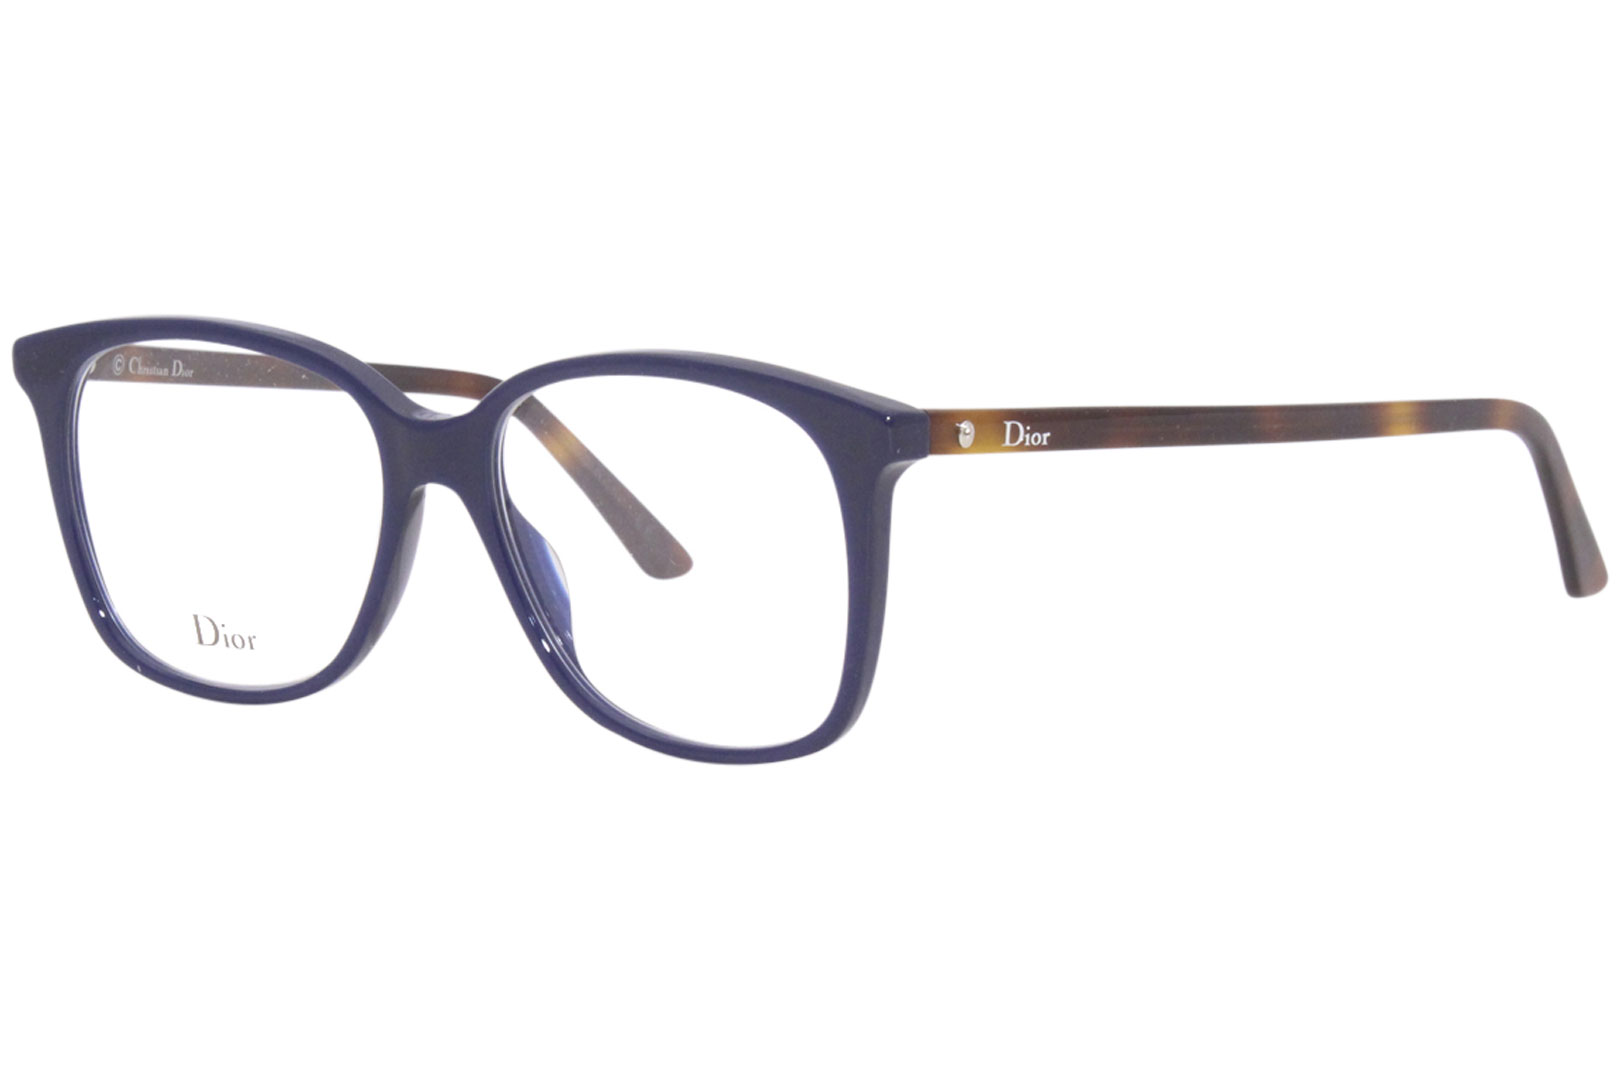 Dior Eyeglasses Eye Glasses for Men and Women Full Frame  Etsy Norway